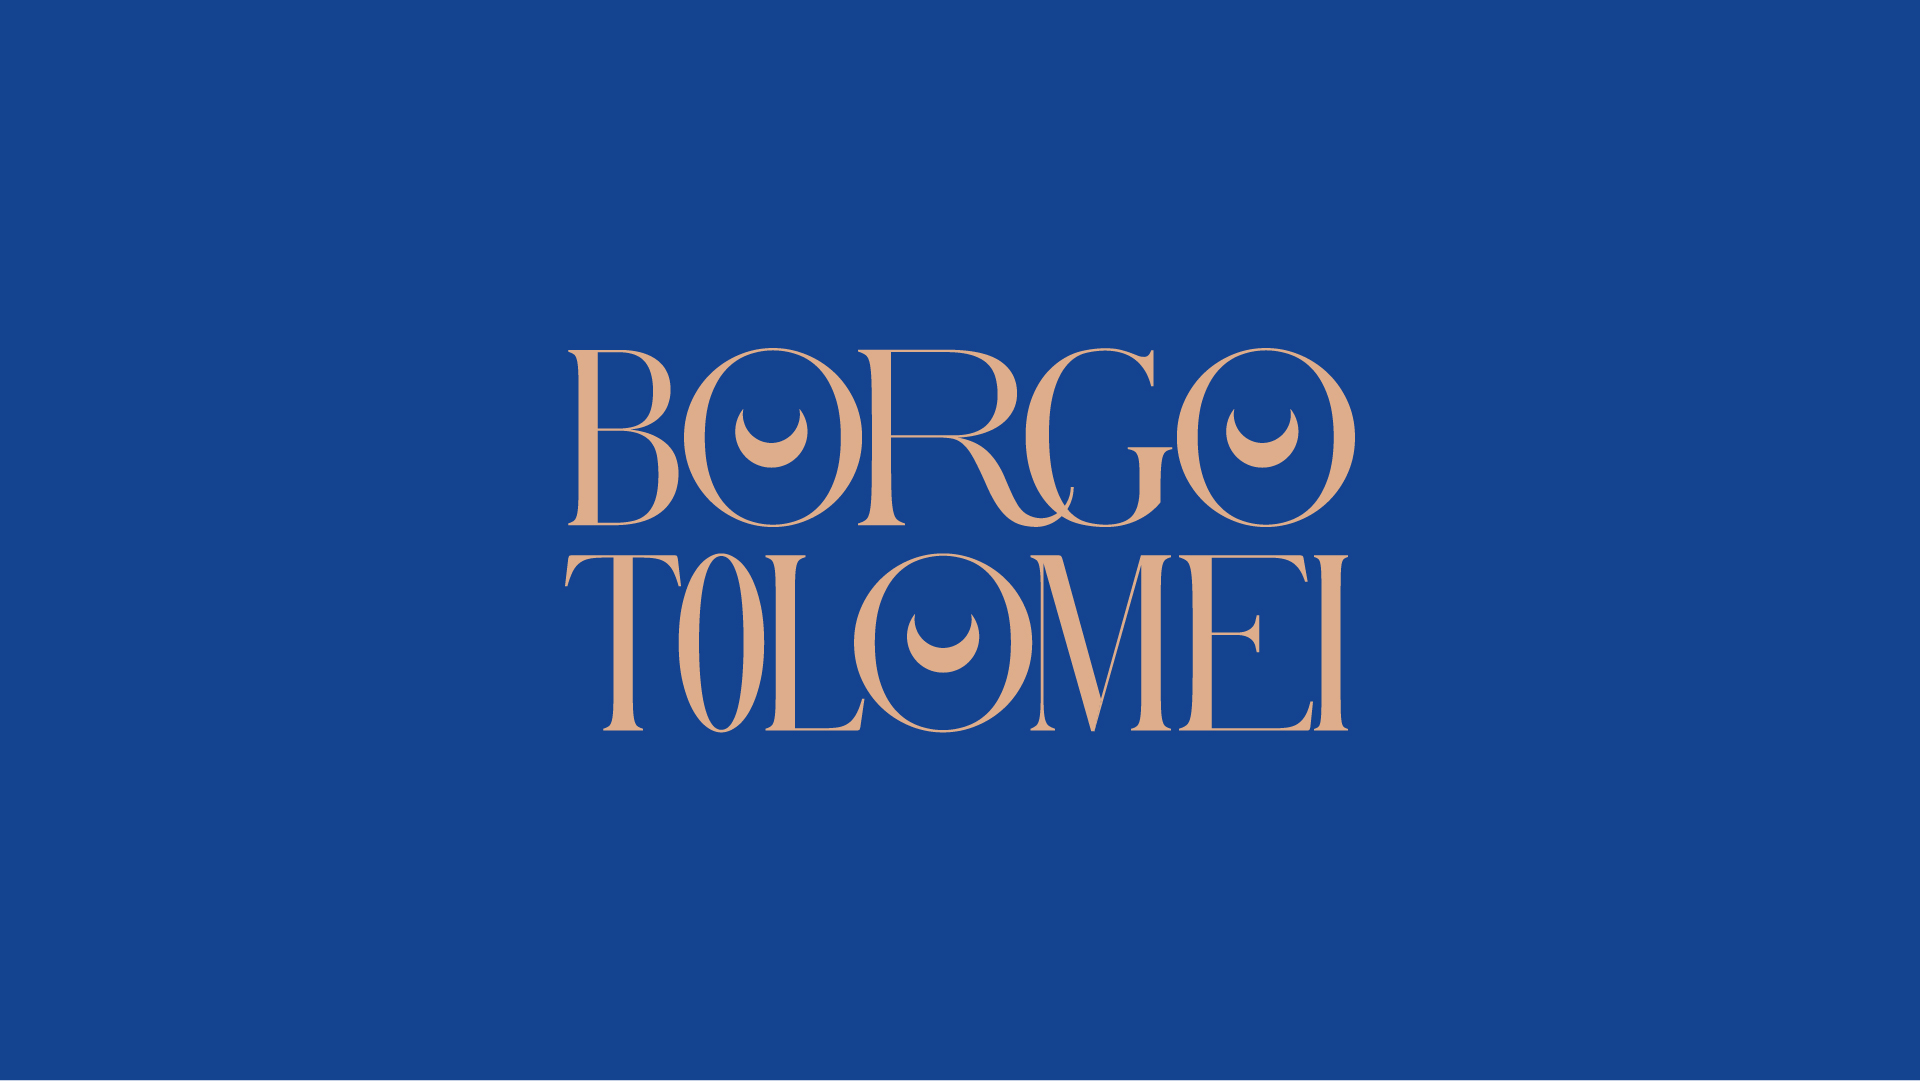 Borgo Tolomei - Cappelli Identity Design